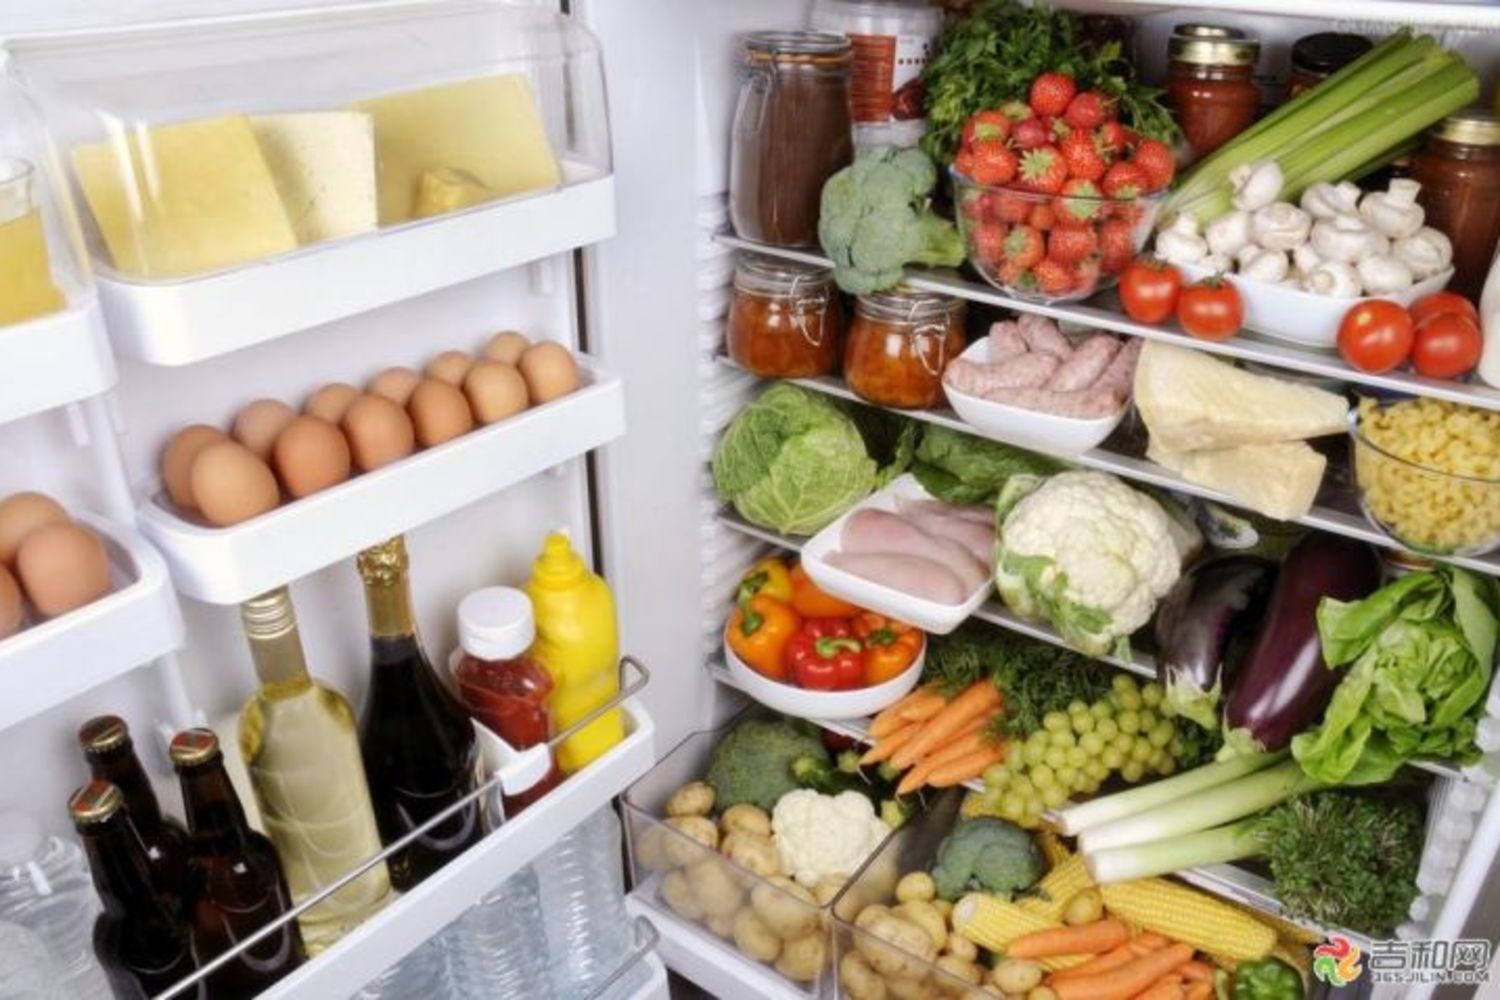 冰箱用健康食物水果和蔬菜 库存照片. 图片 包括有 冷冻机, 牛奶店, 成份, 食物, 厨房, 黄瓜, 健康 - 55737678